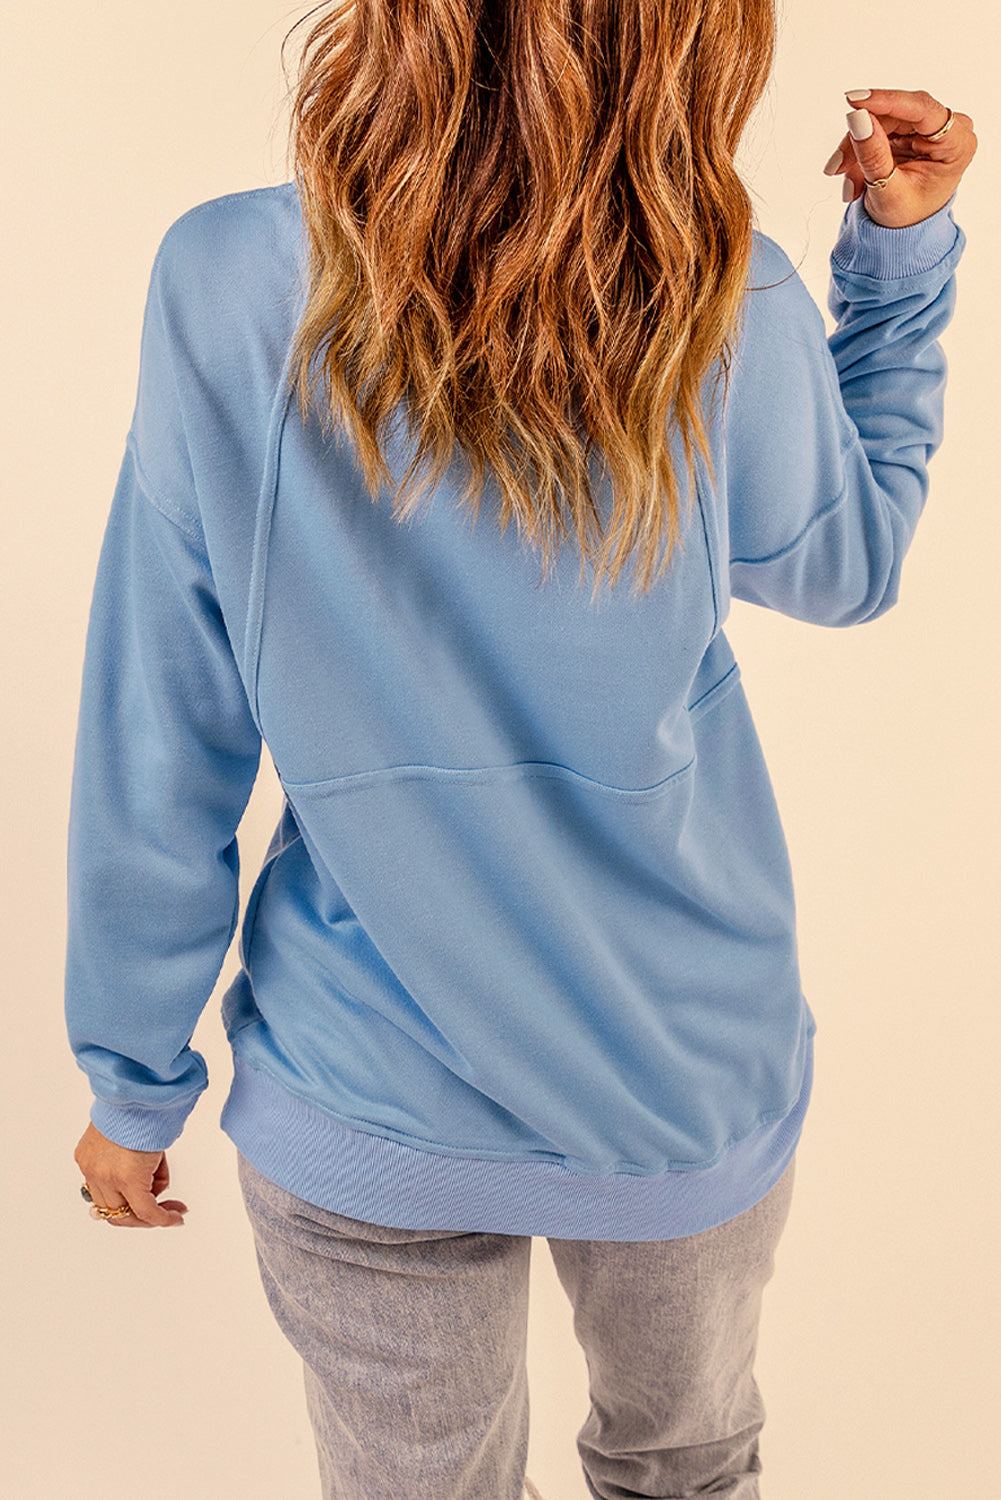 Cotton Pocketed Half Zip Pullover Sky Blue Sweatshirt Sweatshirts & Hoodies JT's Designer Fashion